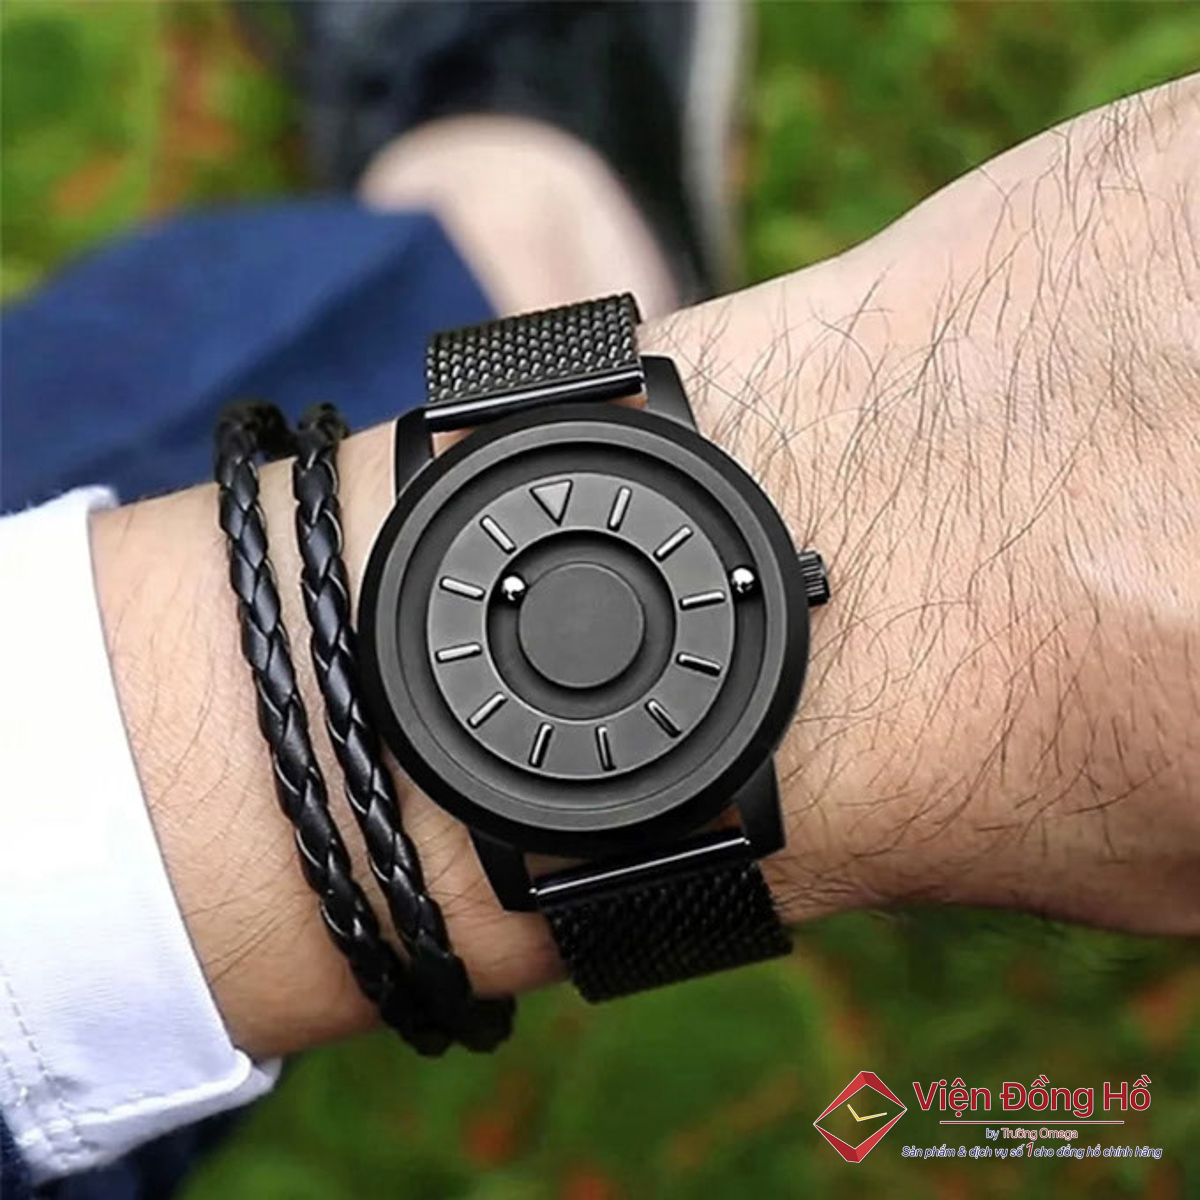 Đồng hồ Zalsach là mẫu dành cho người mù có thiết kế khá giống với Eone Bradley